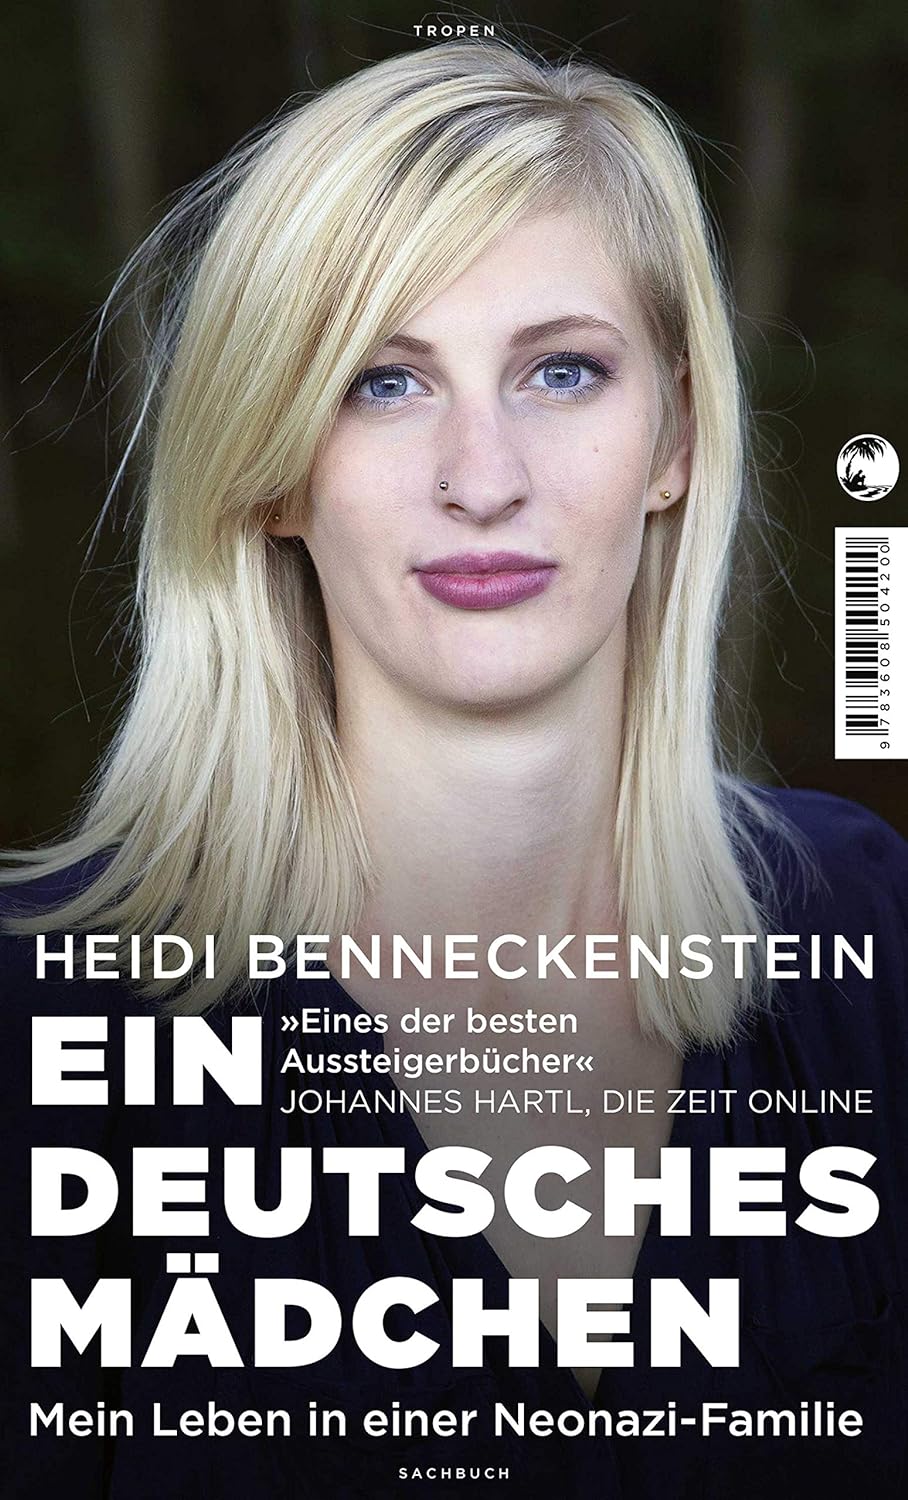 Heidi Benneckenstein: Ein deutsches Mädchen (Paperback, German language, Tropen)